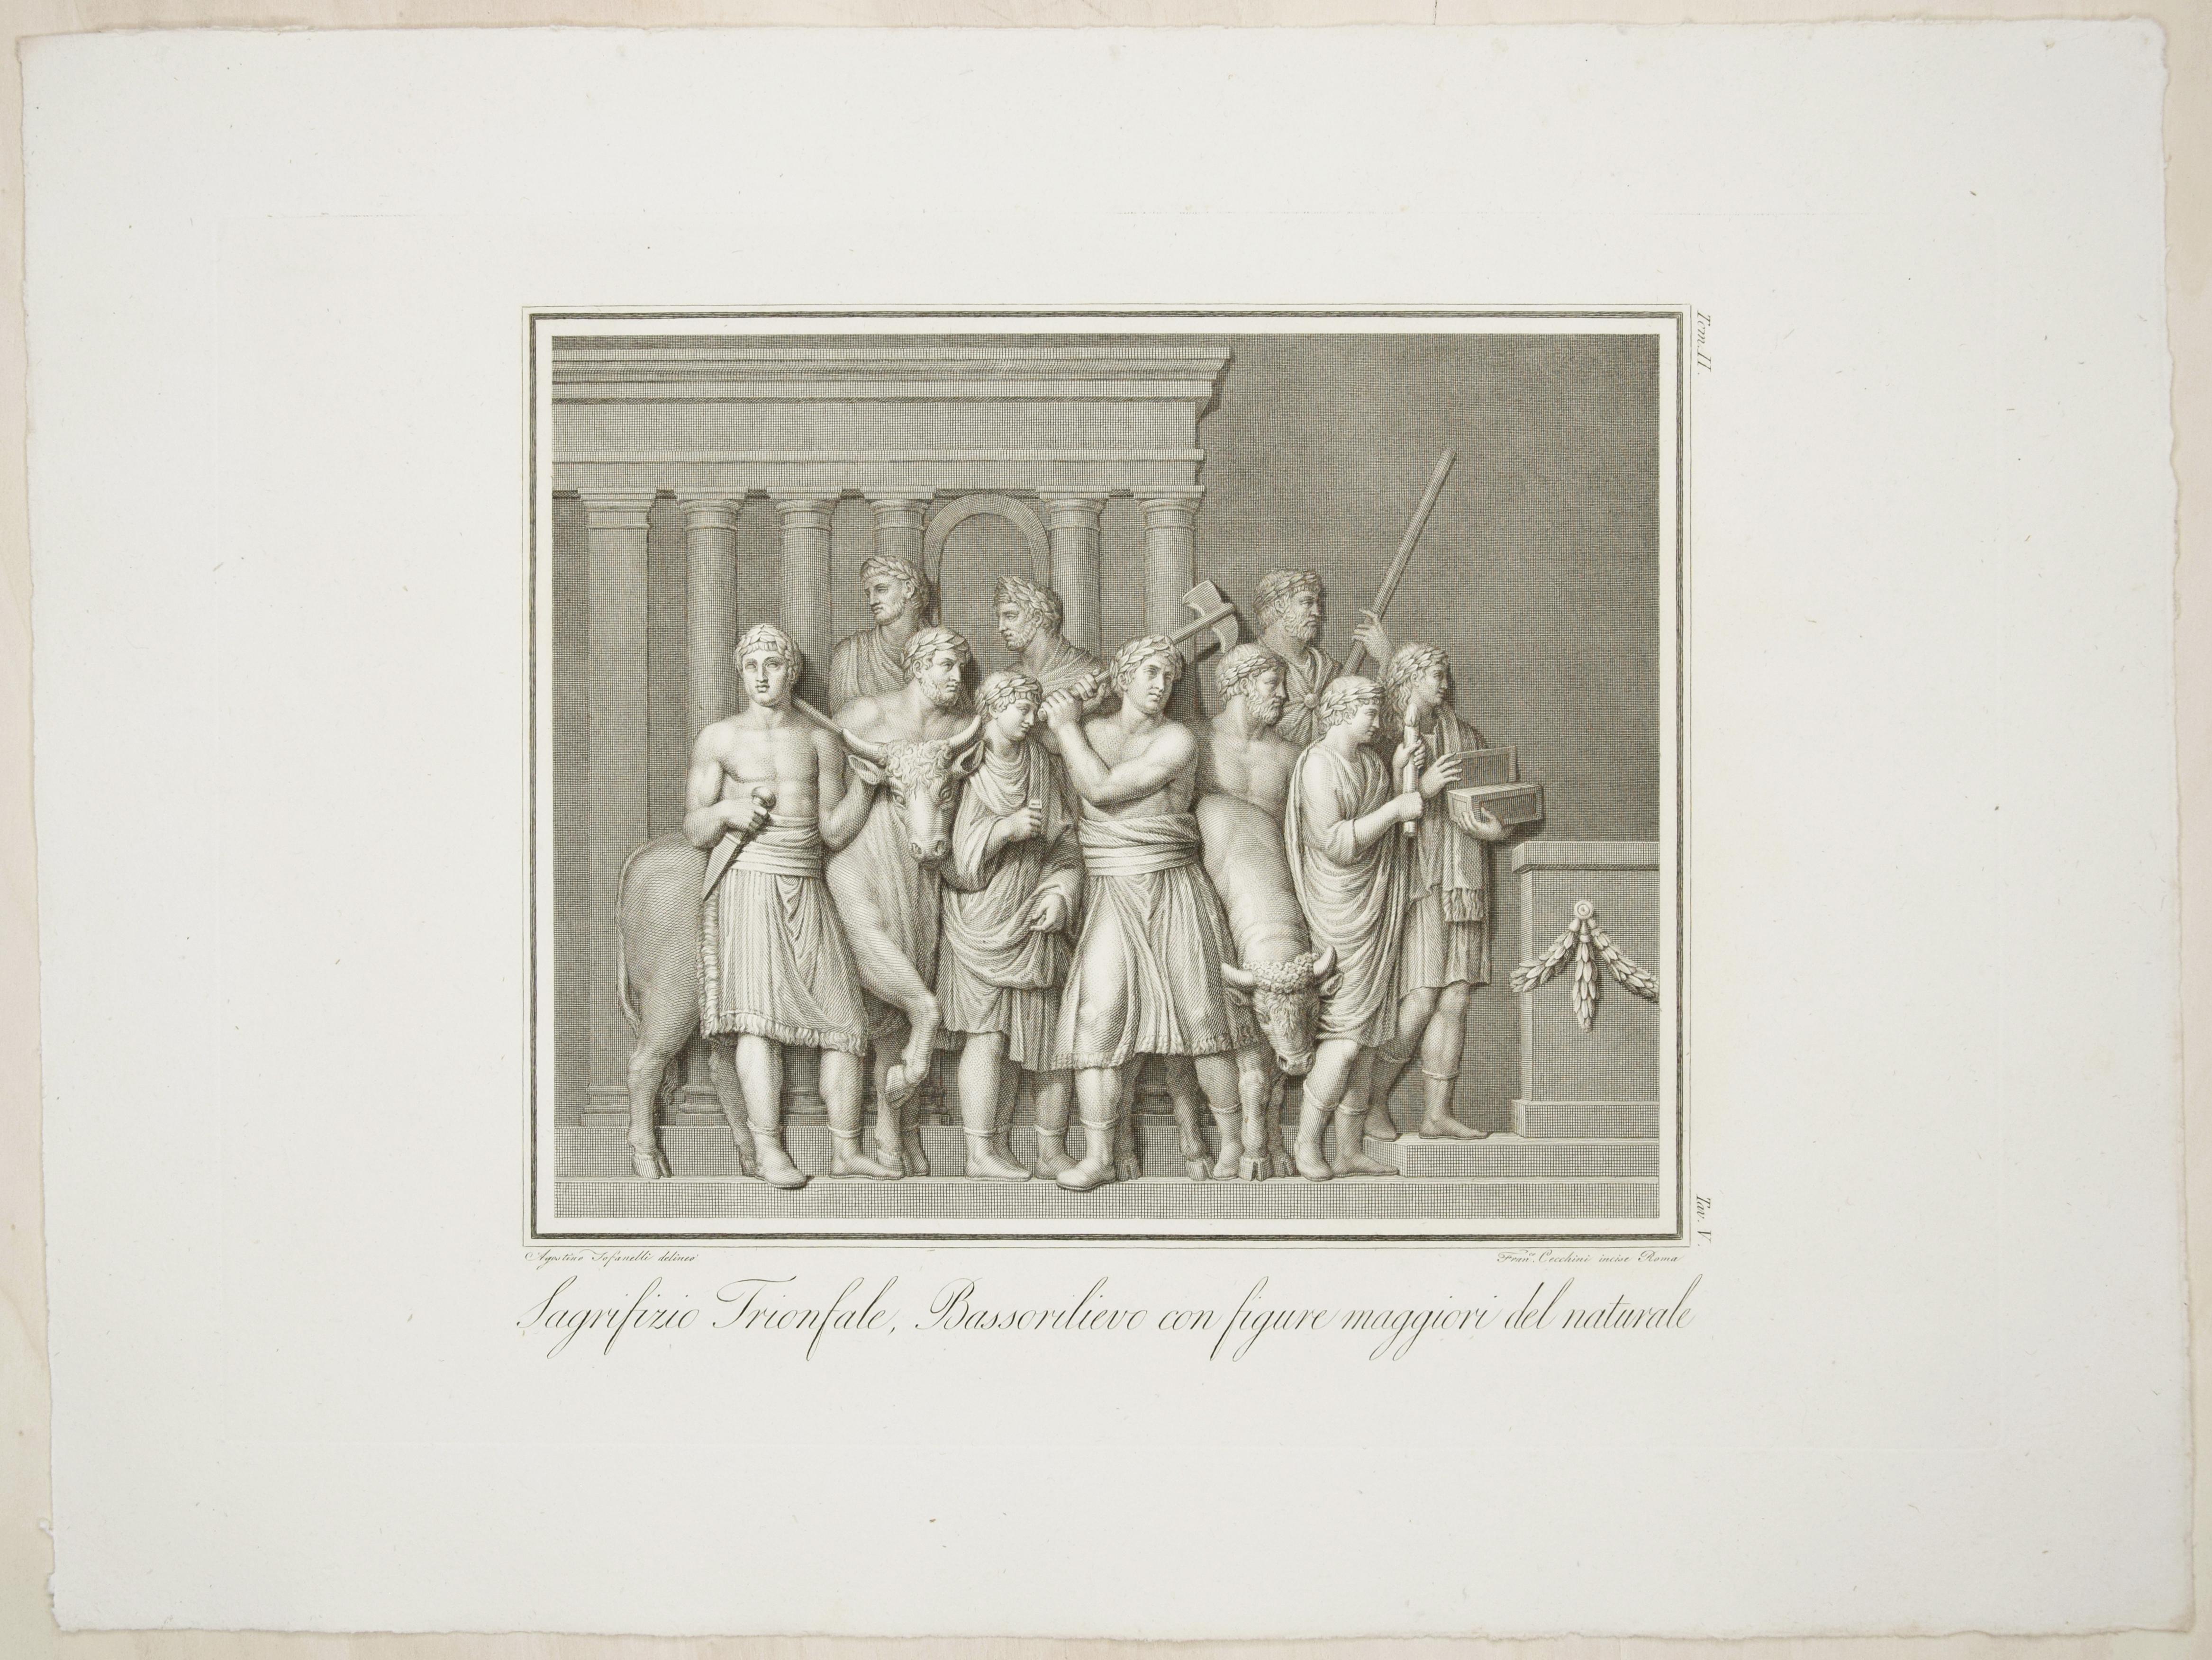 Francesco Cecchini Figurative Print - The Sacrifice - Original Etching by F. Cecchini After A. Tofanelli - 1821